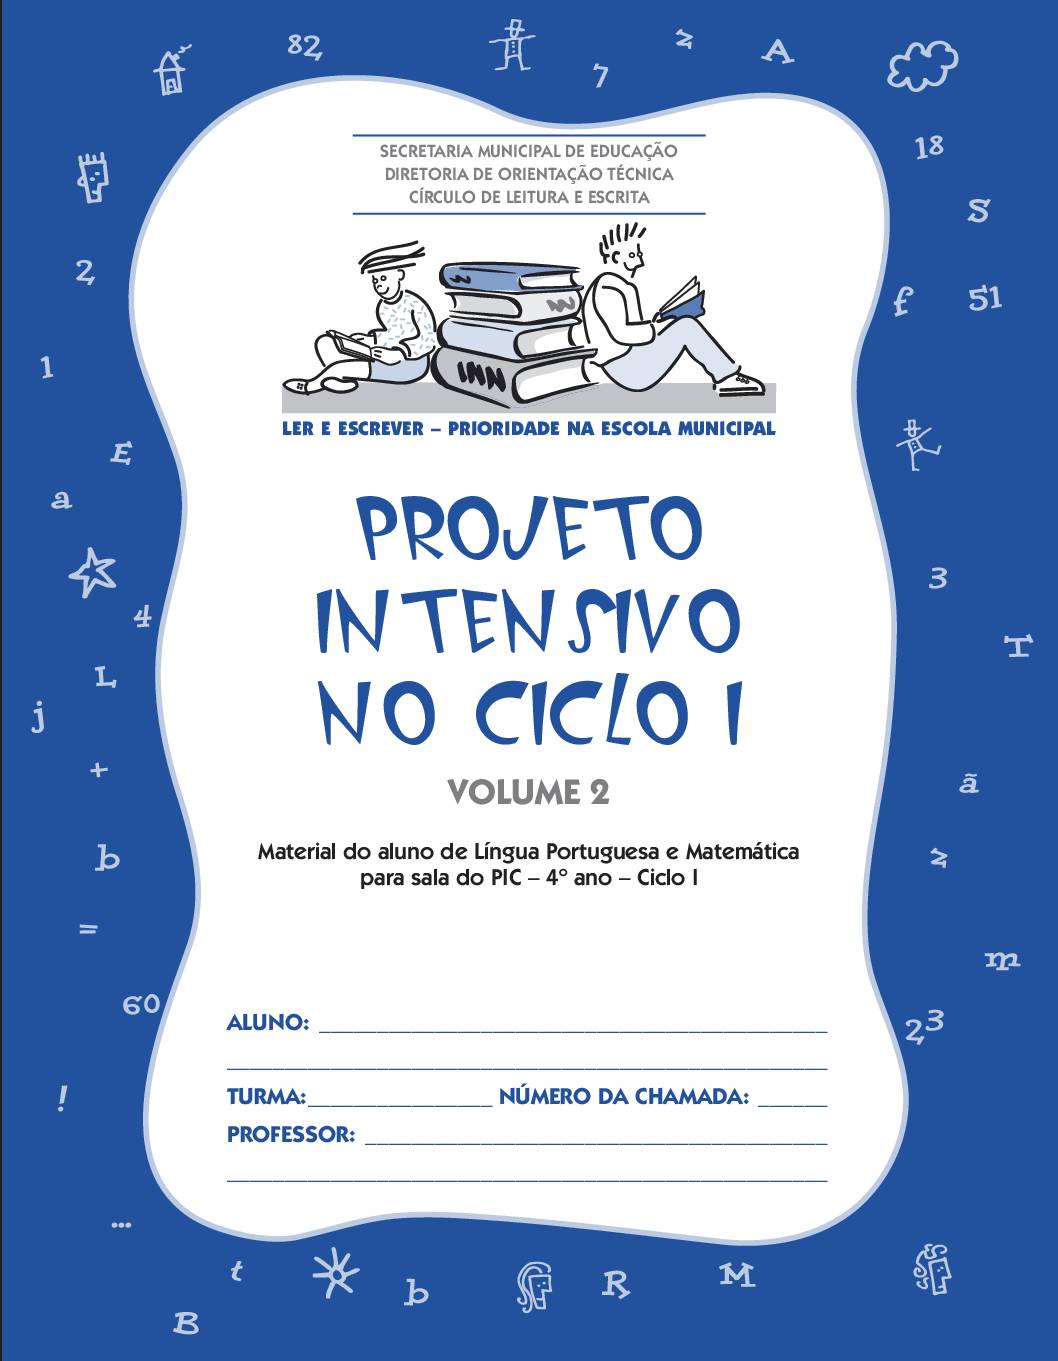 Material com atividades de Língua Portuguesa e Matemática para os estudantes da sala do Projeto Intensivo do Ciclo I - 4 º ano. Volume 2.